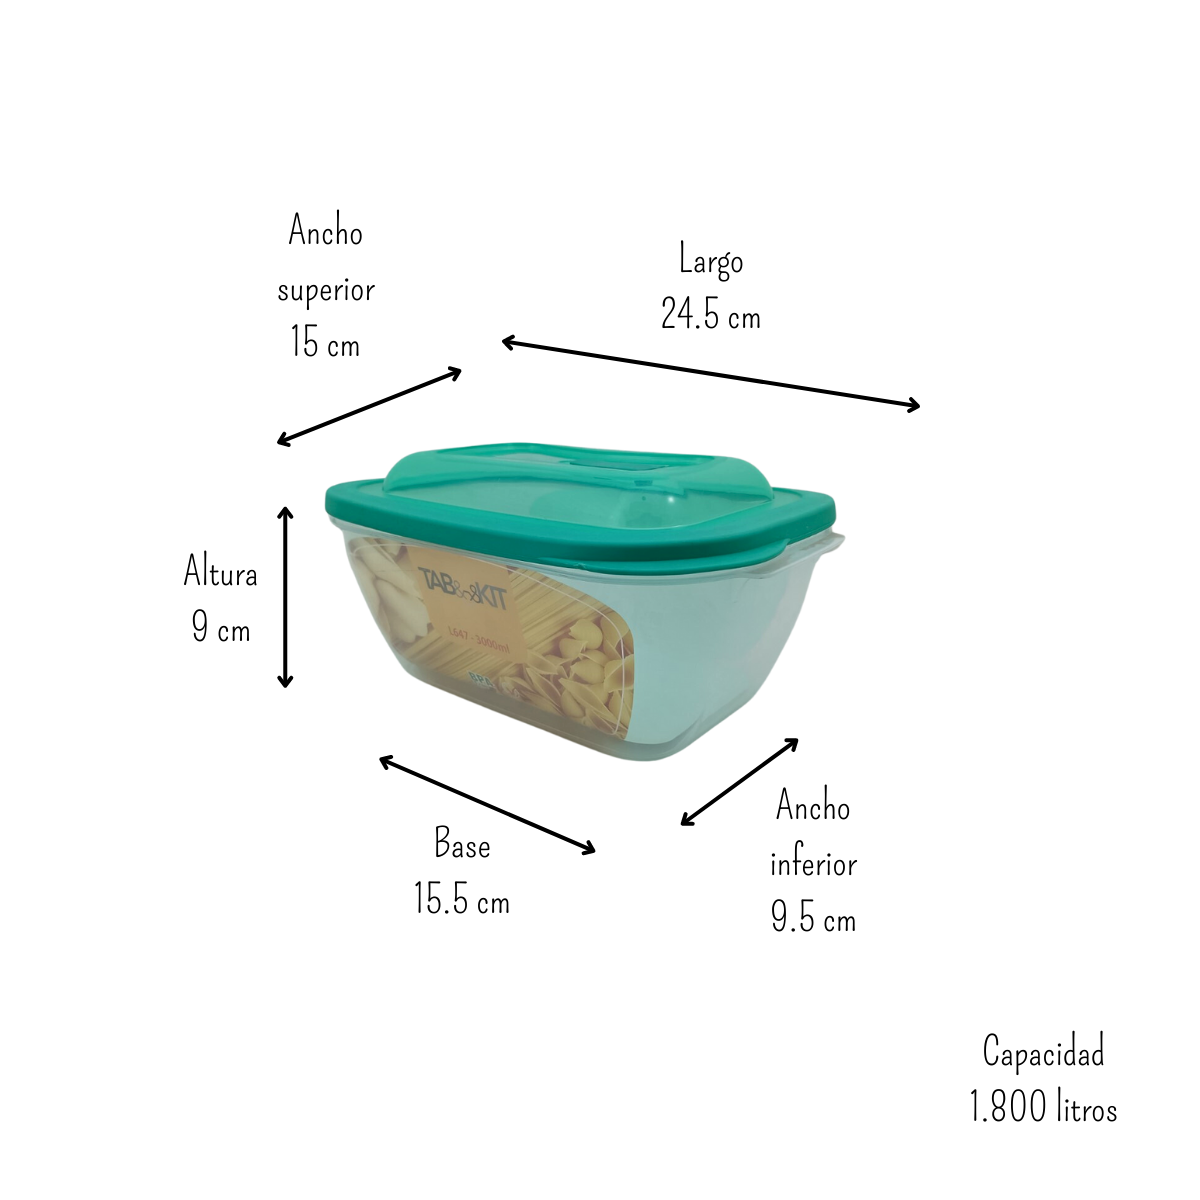 Tupper recipiente hermetico rectangular 1.8lt ANFORAMA-Todo para mi cocina  – ANFORAMA (Todo para mi Cocina)